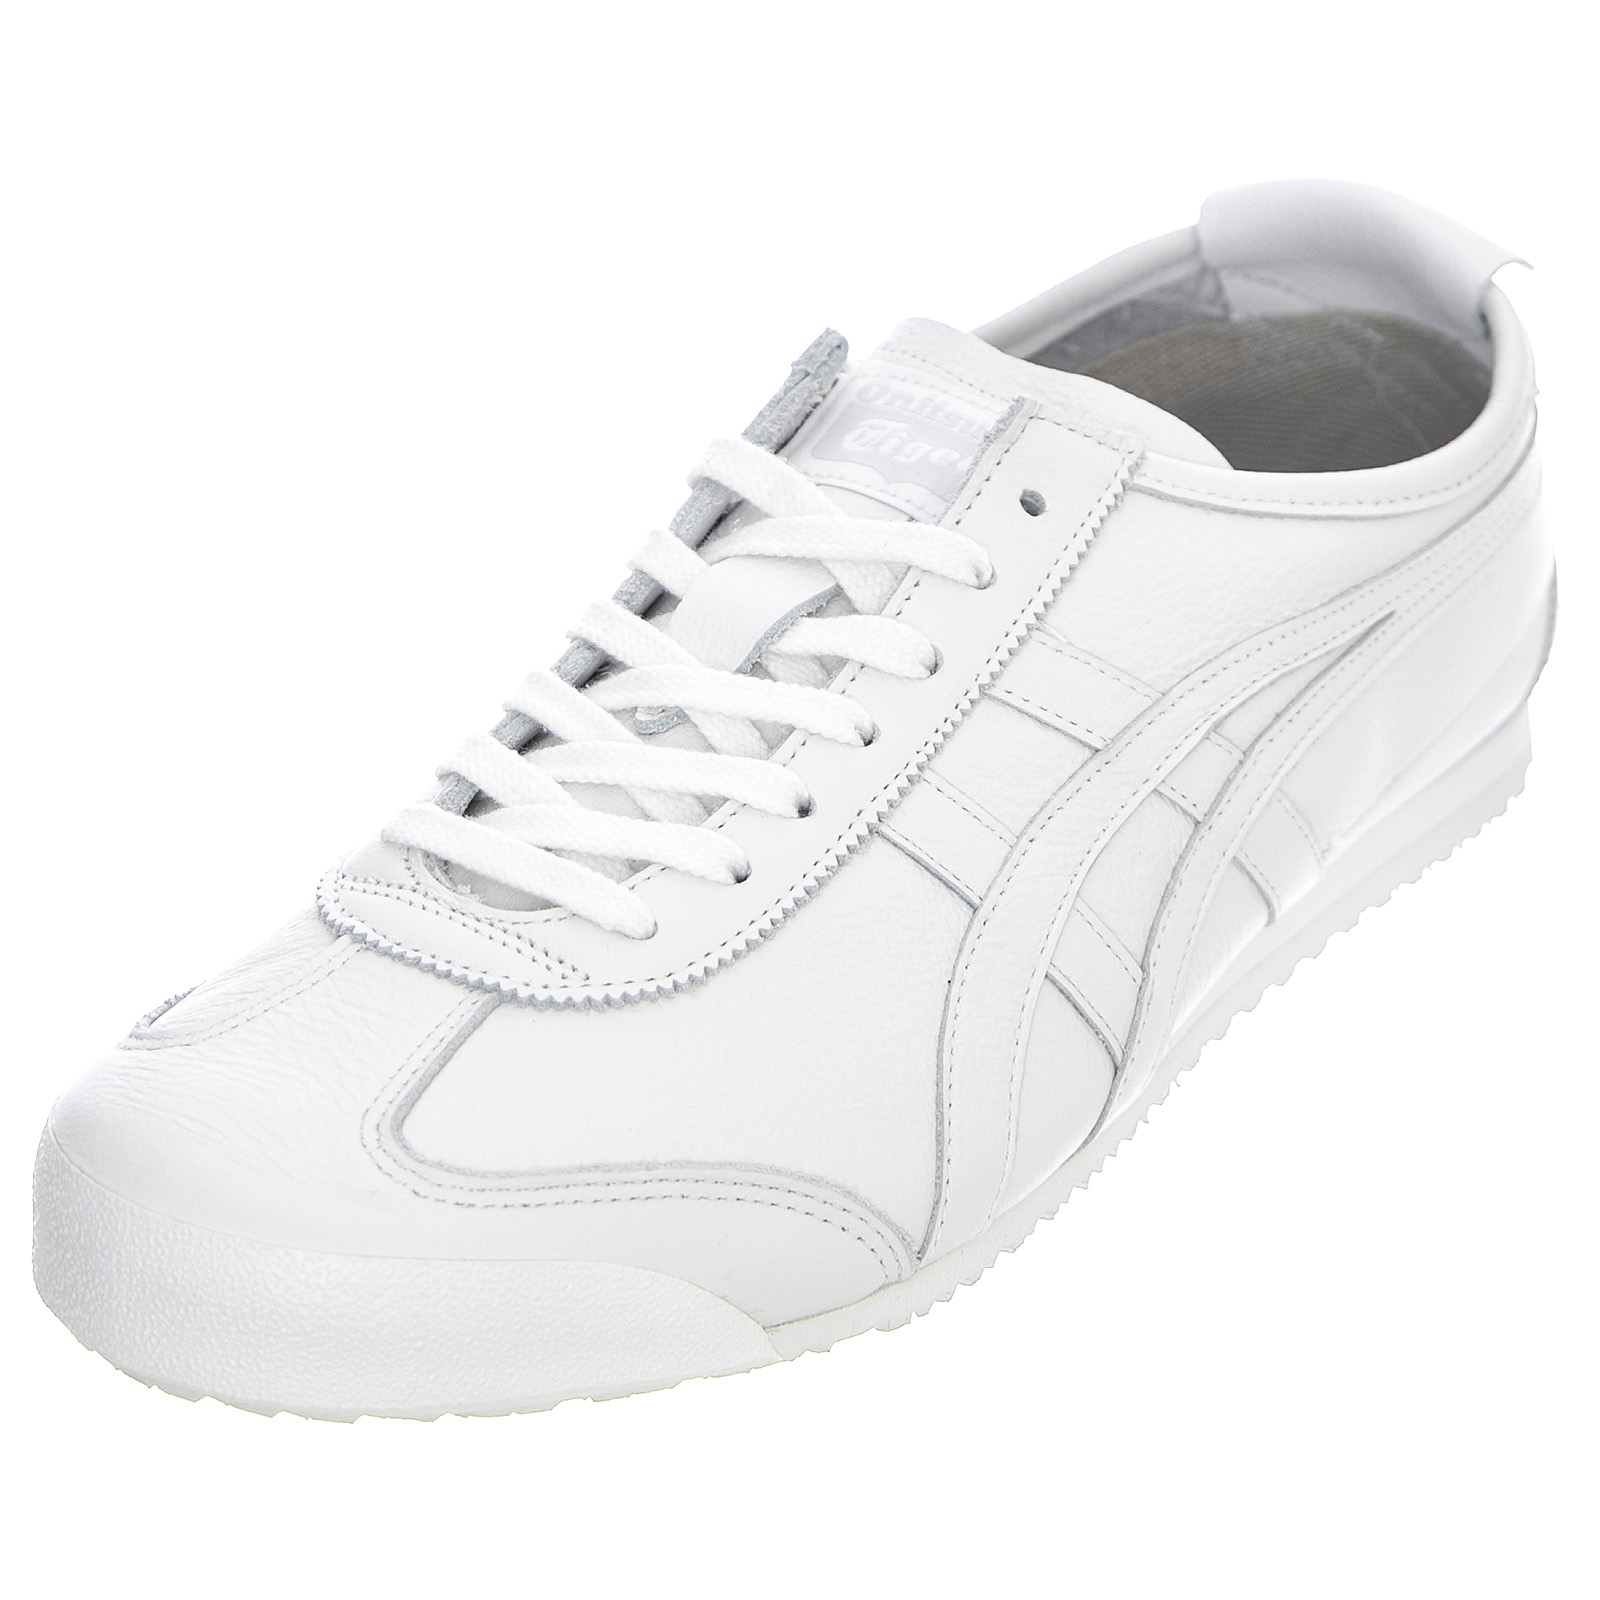 Onitsuka tiger mexico 66 sneakers - white - scarpe profilo basso uomo  bianche | eBay